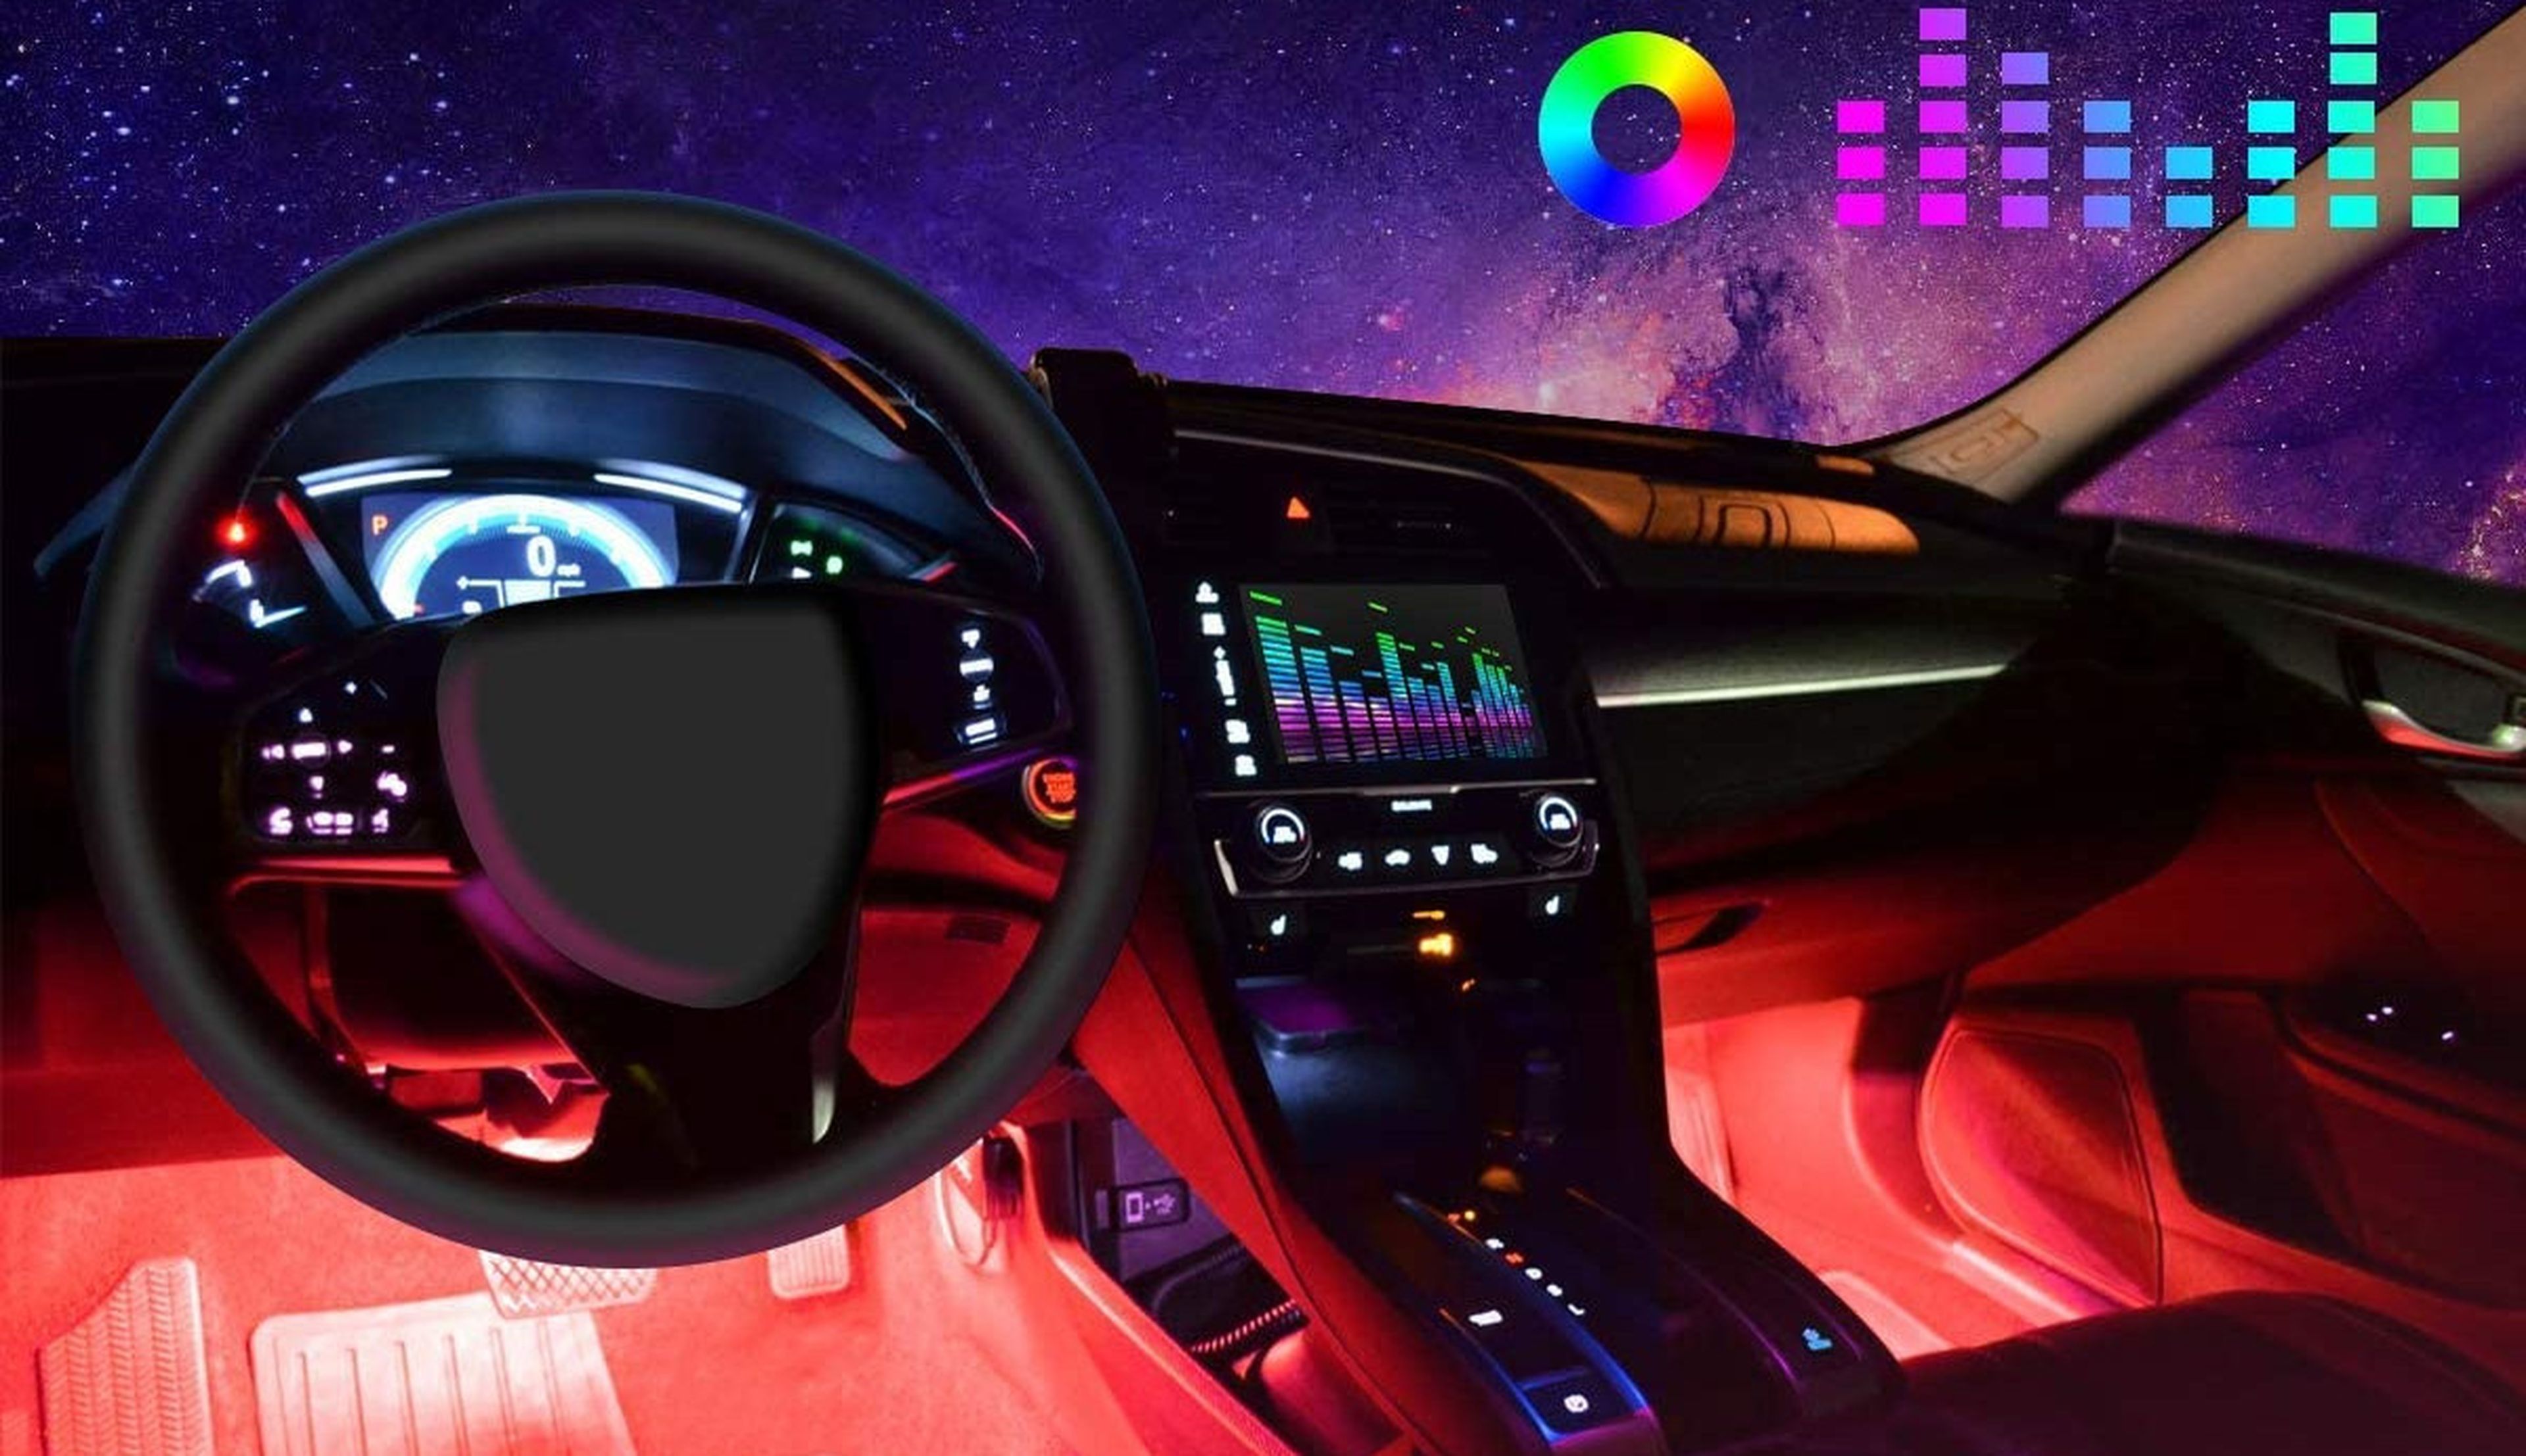 MEJORES luces LED Multi Color Para interior de Auto 